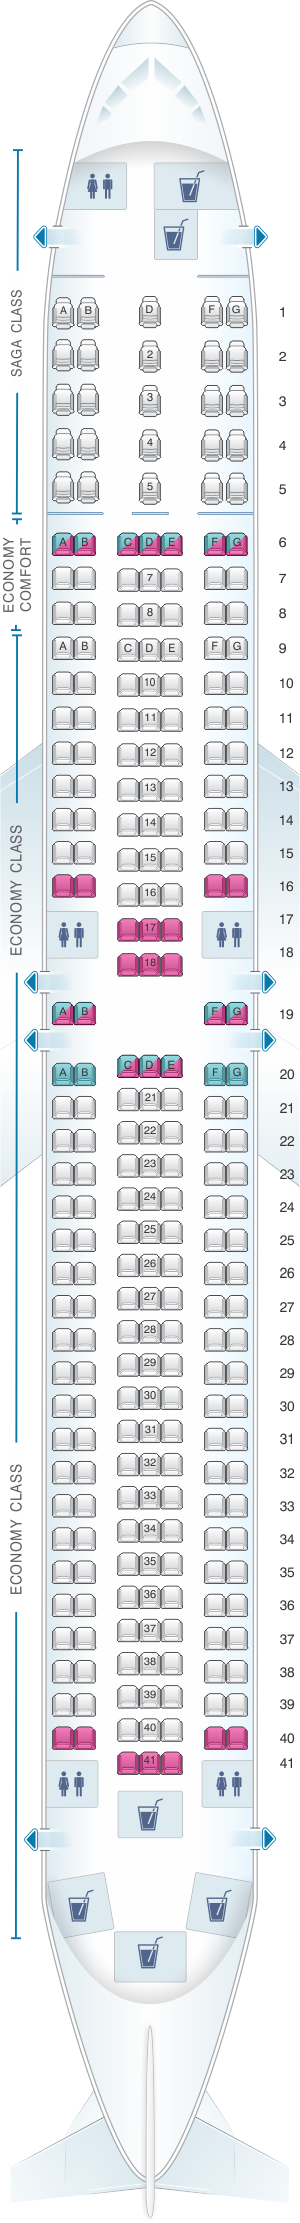 Seat map for Icelandair Boeing B767 300ER